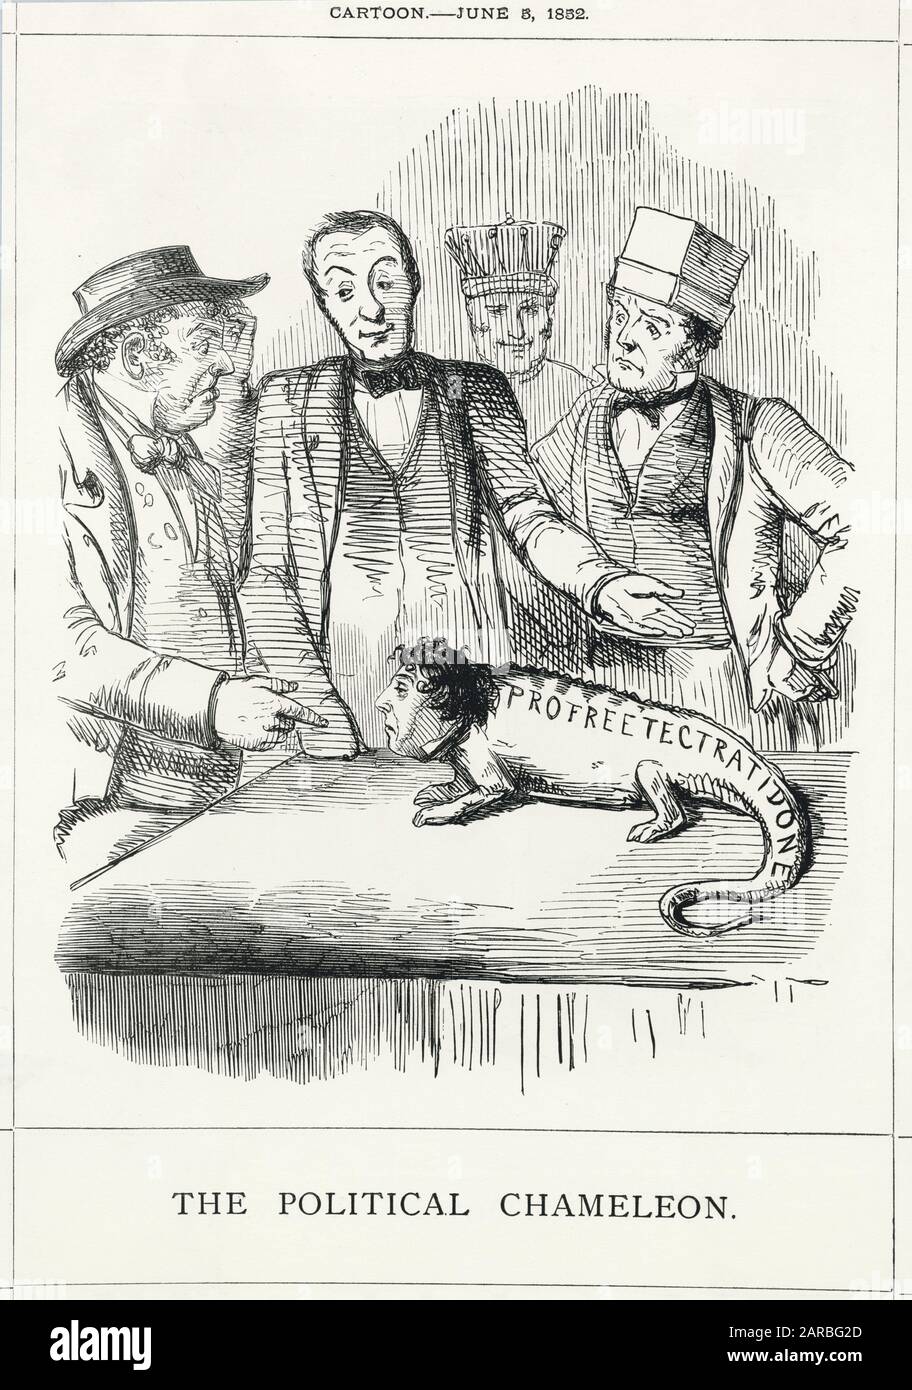 Cartoon, das politische Chamäleon – satirischer Kommentar zu Benjamin Disraelis Fähigkeit, die Loyalität seiner Partei von Protektionismus zu Freihandel zu ändern, in Erwartung einer bevorstehenden allgemeinen Wahl. Stockfoto